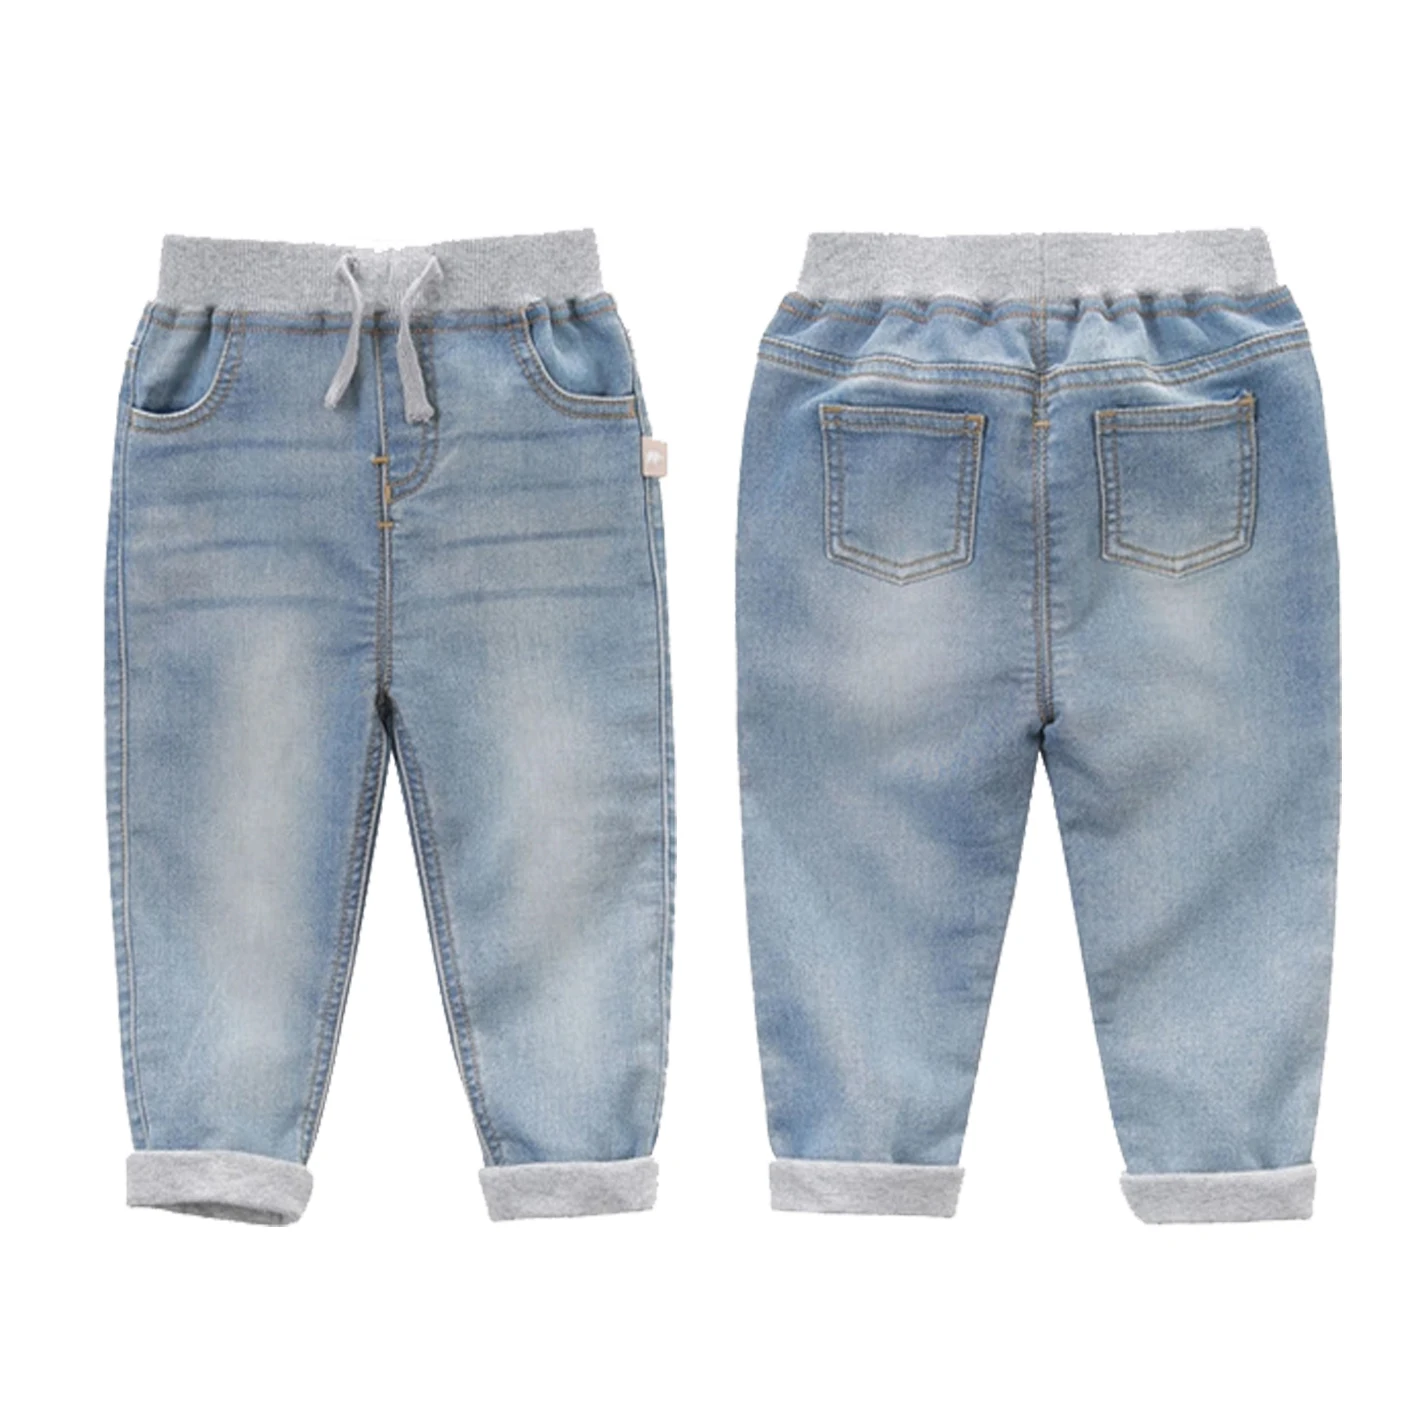 boys adjustable waist jeans